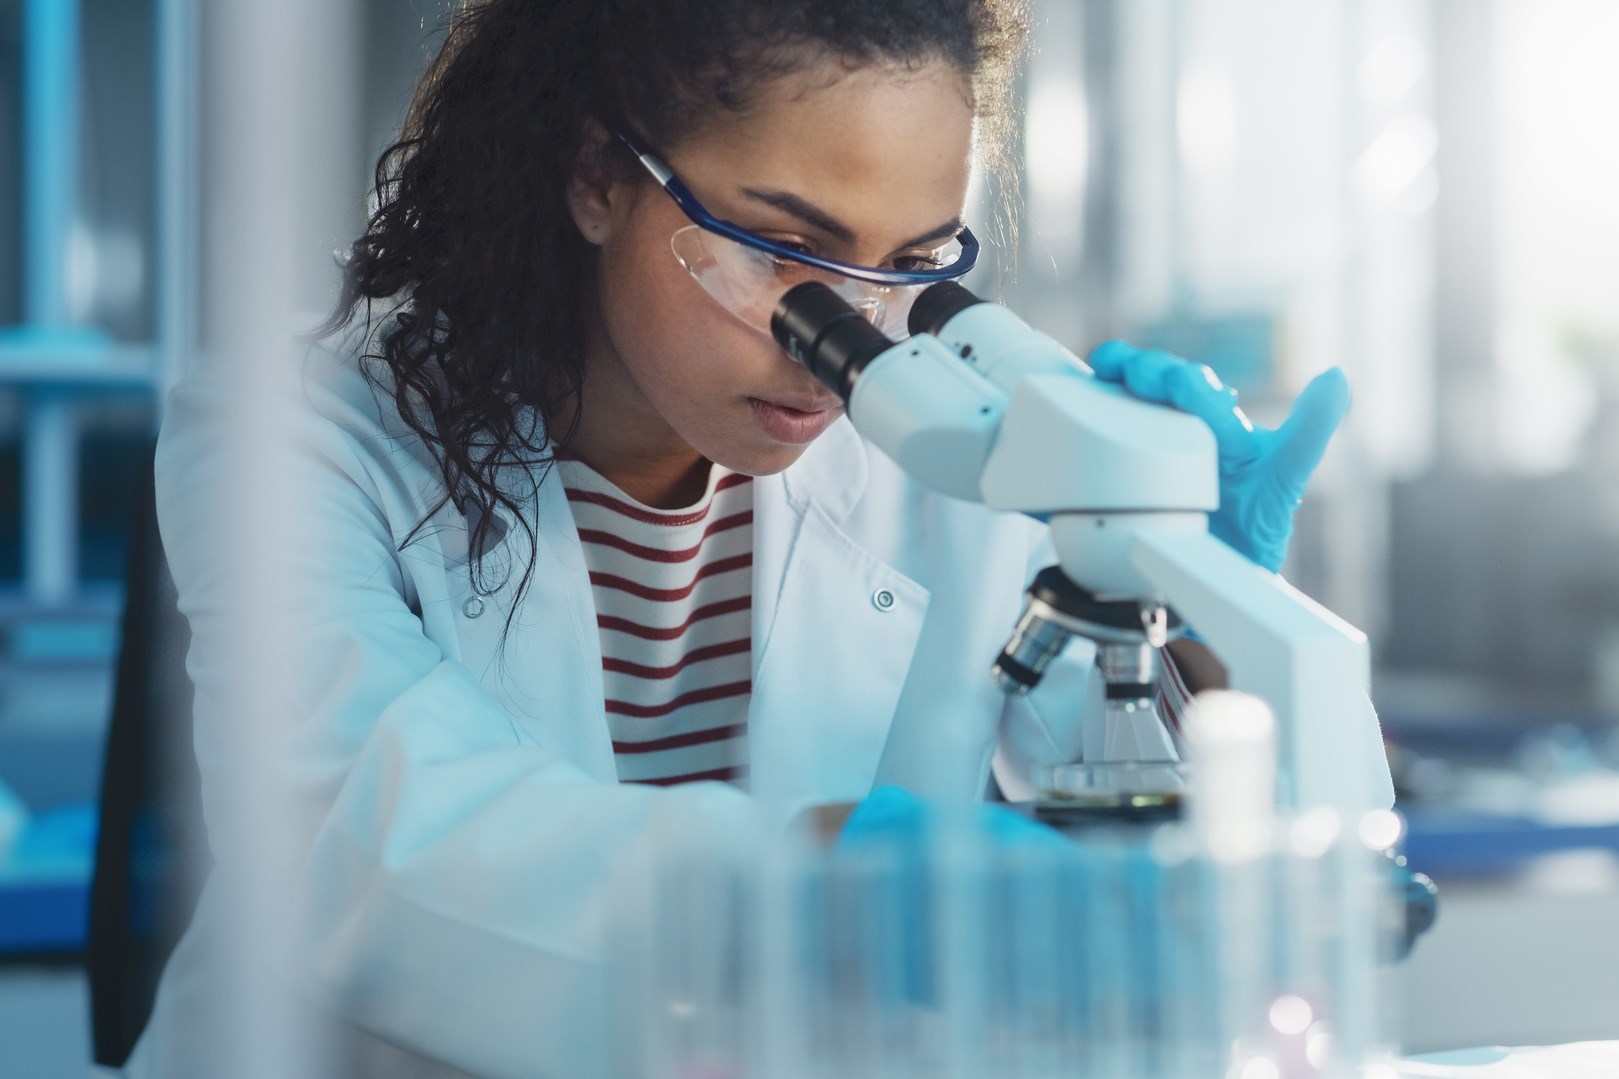 Medizinisch-wissenschaftliches Labor: Porträt einer schönen schwarzen Wissenschaftlerin, die unter dem Mikroskop eine Testprobe analysiert. Ehrgeizige junge Biotechnologie-Spezialistin, die mit moderner Ausrüstung arbeitet